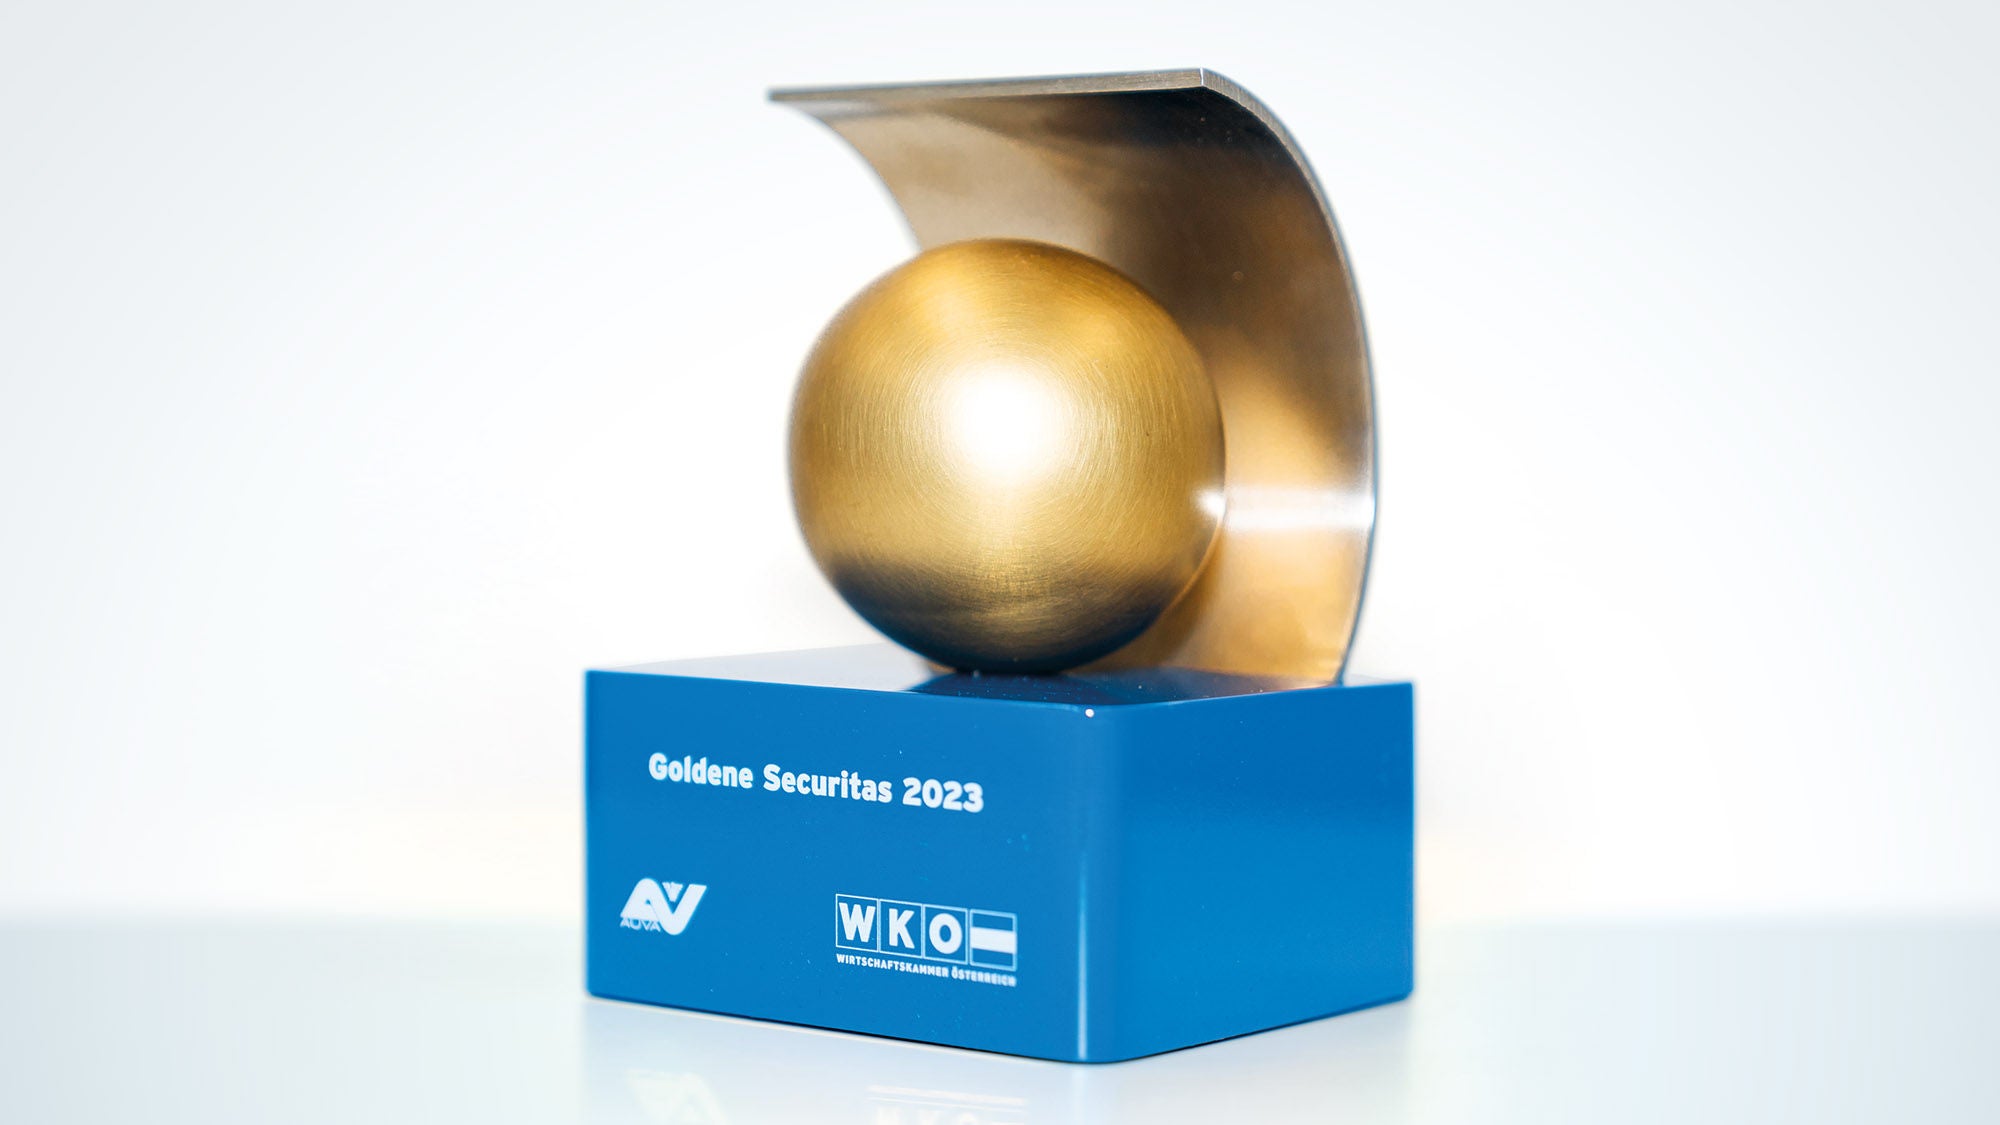 der Pokal der Goldenen Securitas 2023, ein goldener Ball auf blauem Sockel